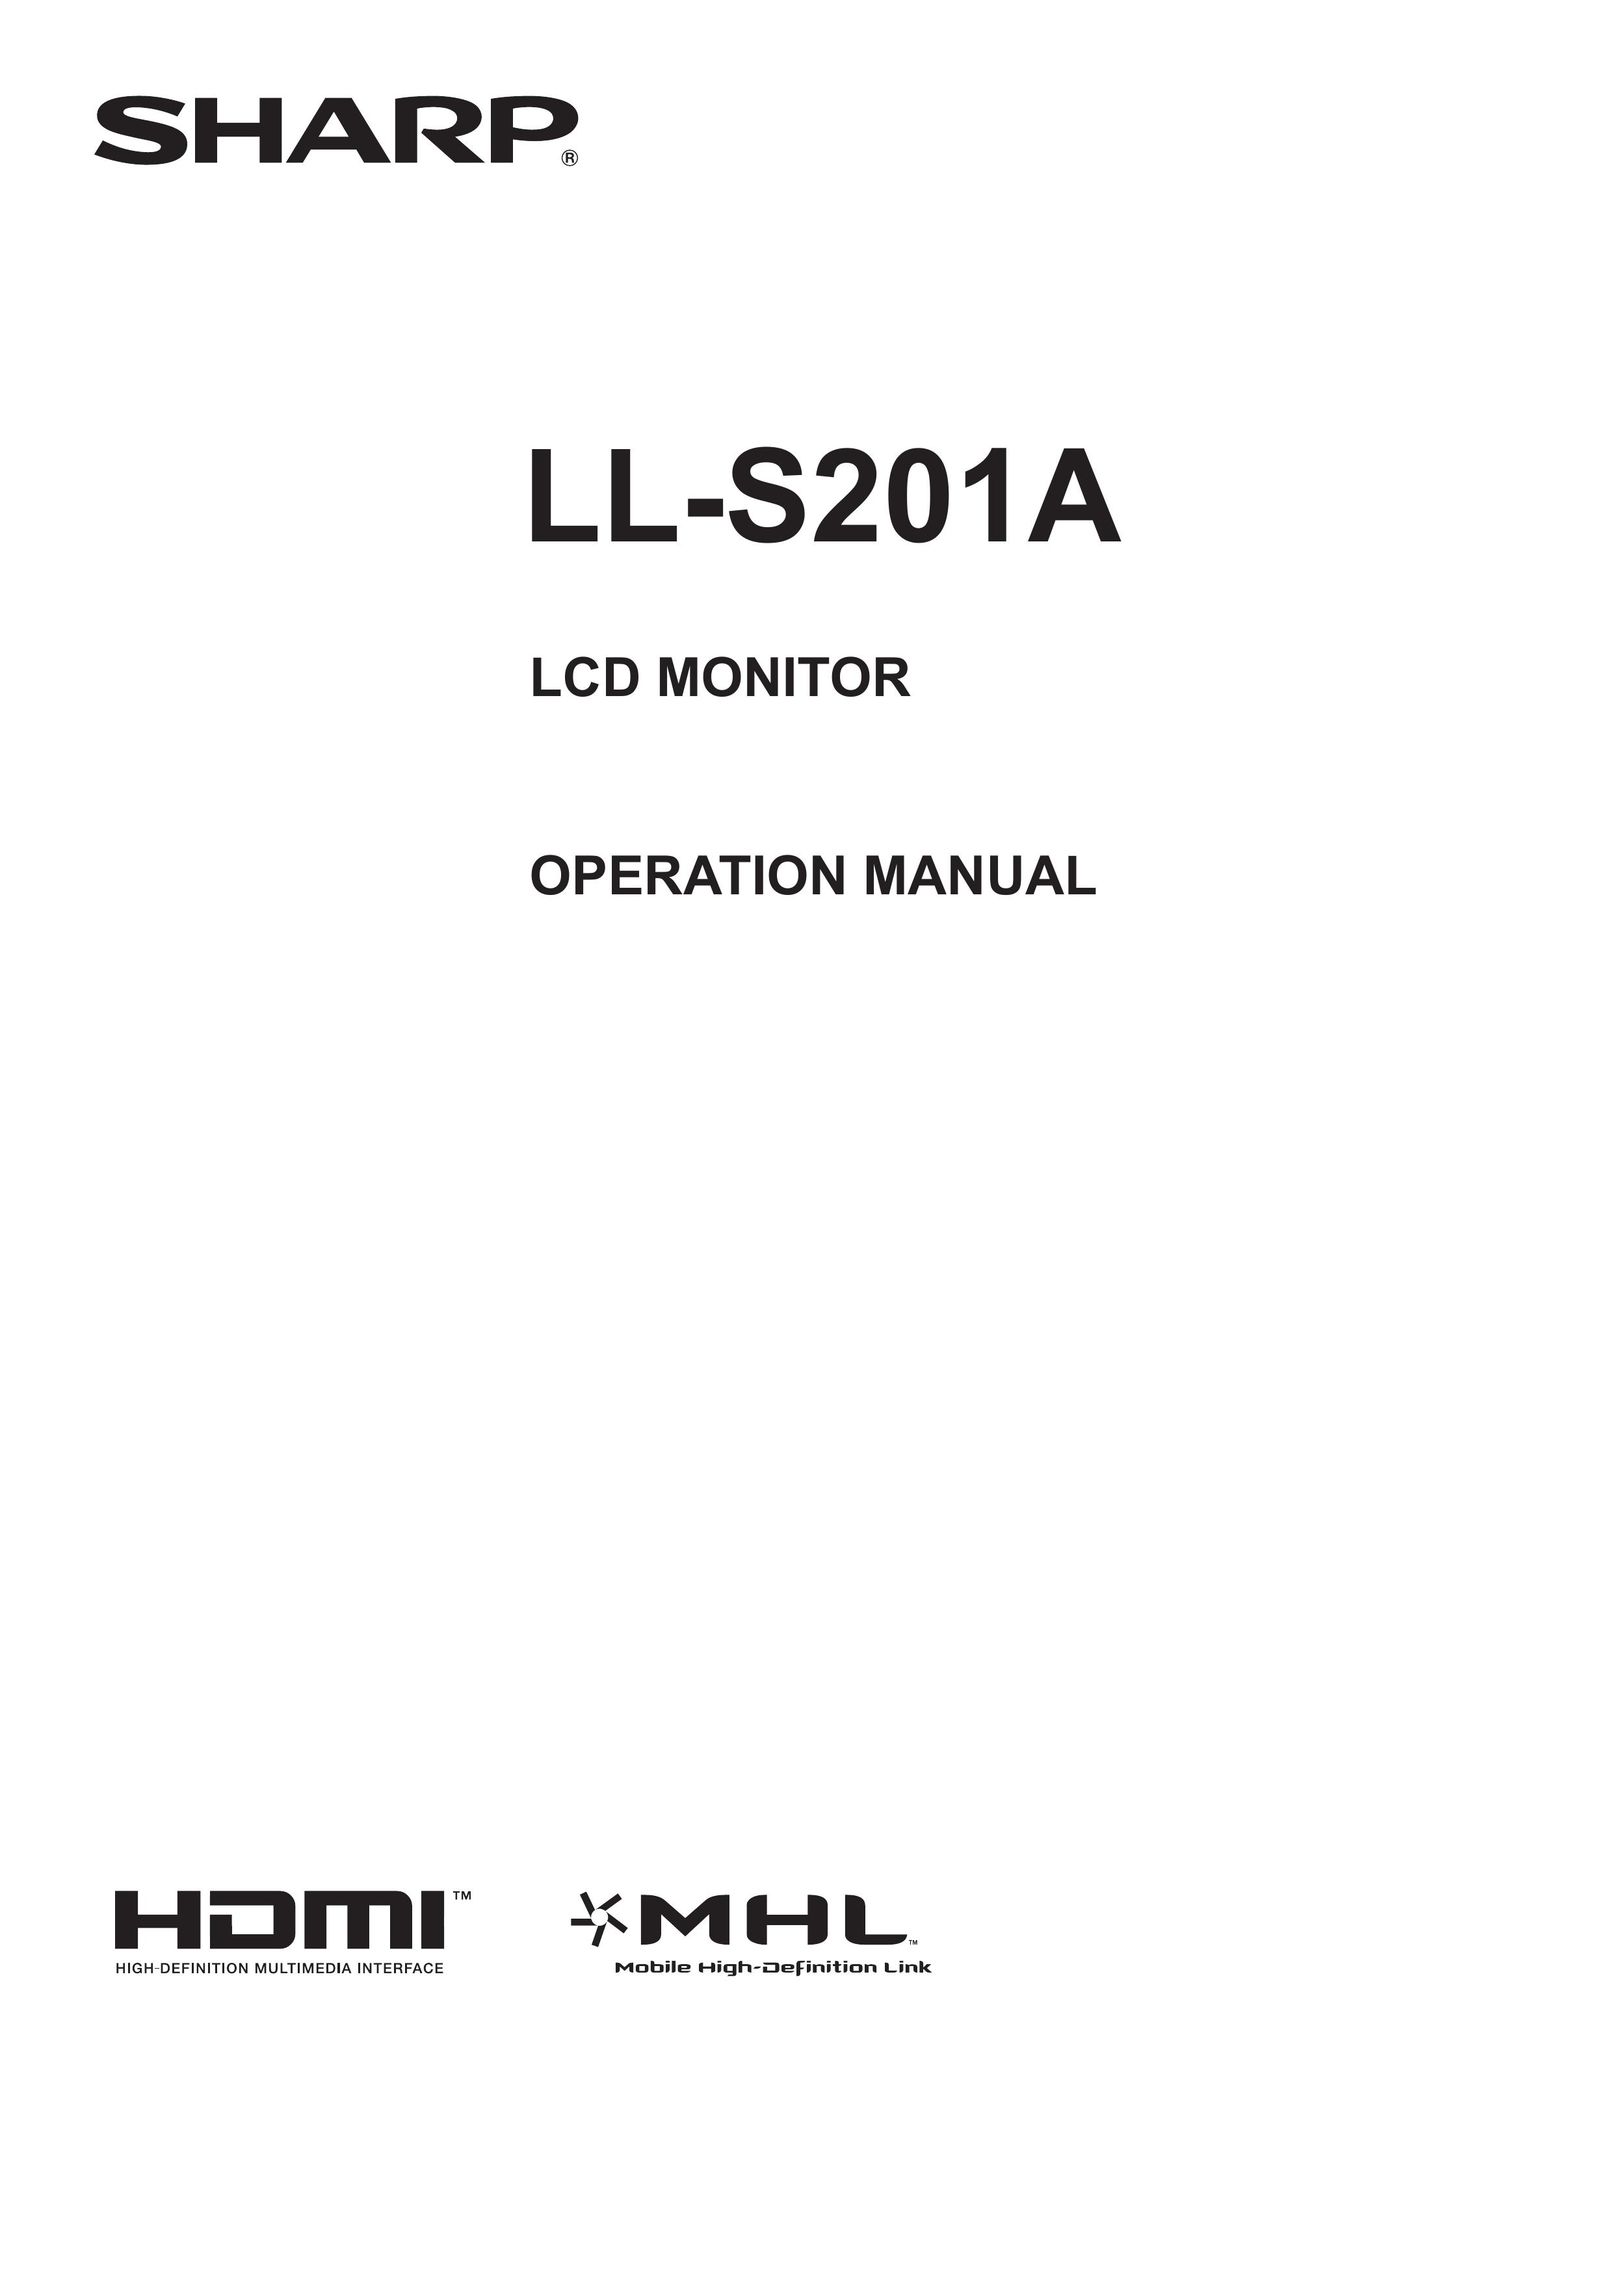 Sharp LL-S201A Computer Monitor User Manual